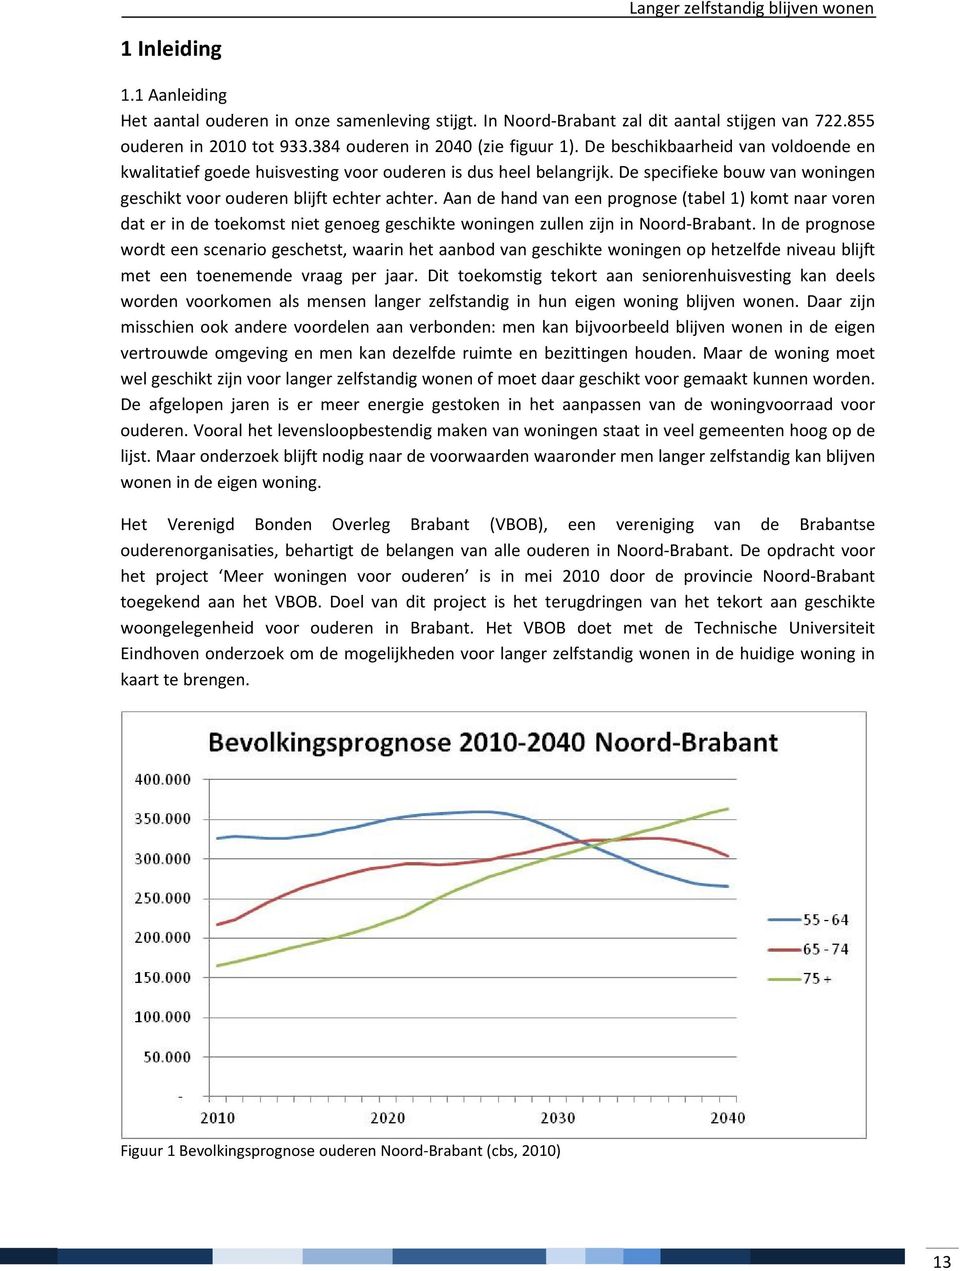 Aan de hand van een prognose (tabel 1) komt naar voren dat er in de toekomst niet genoeg geschikte woningen zullen zijn in Noord-Brabant.